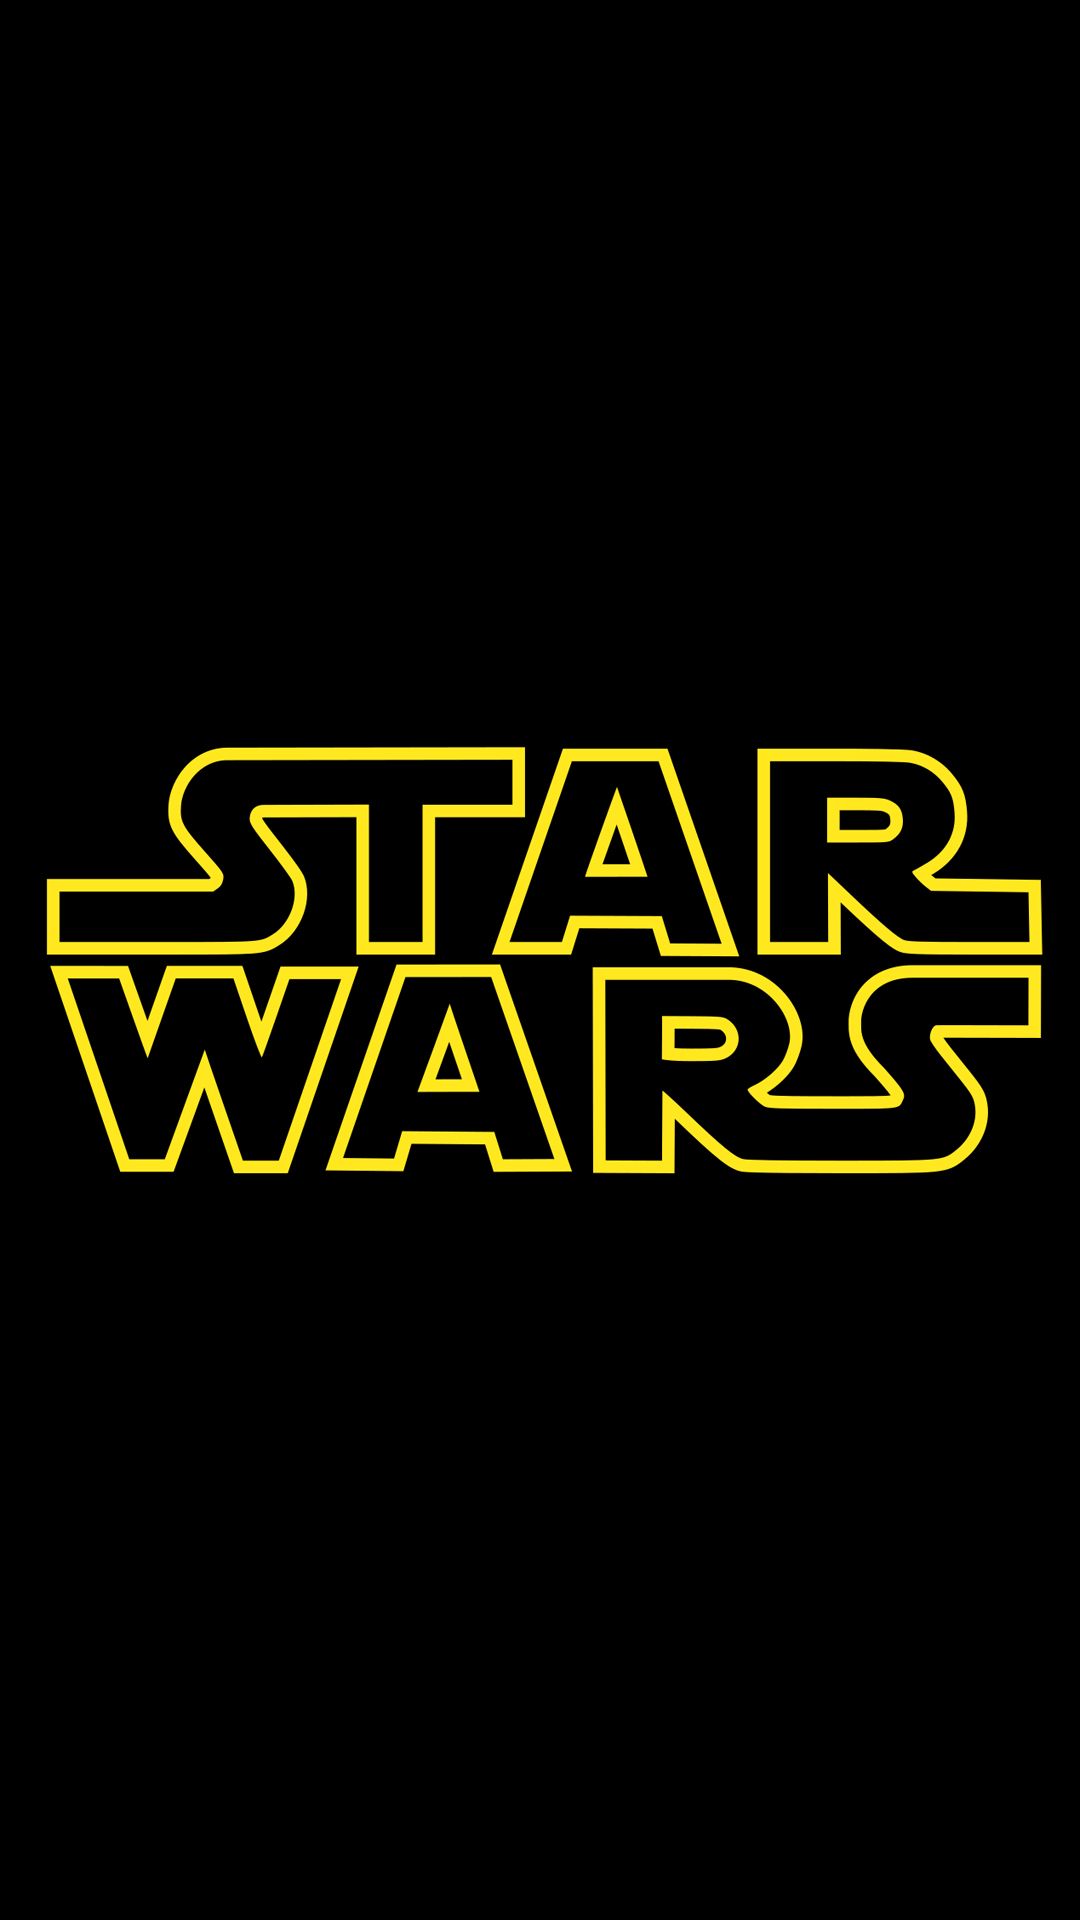 Portretowy obraz klasycznego banera z logo serii Star Wars